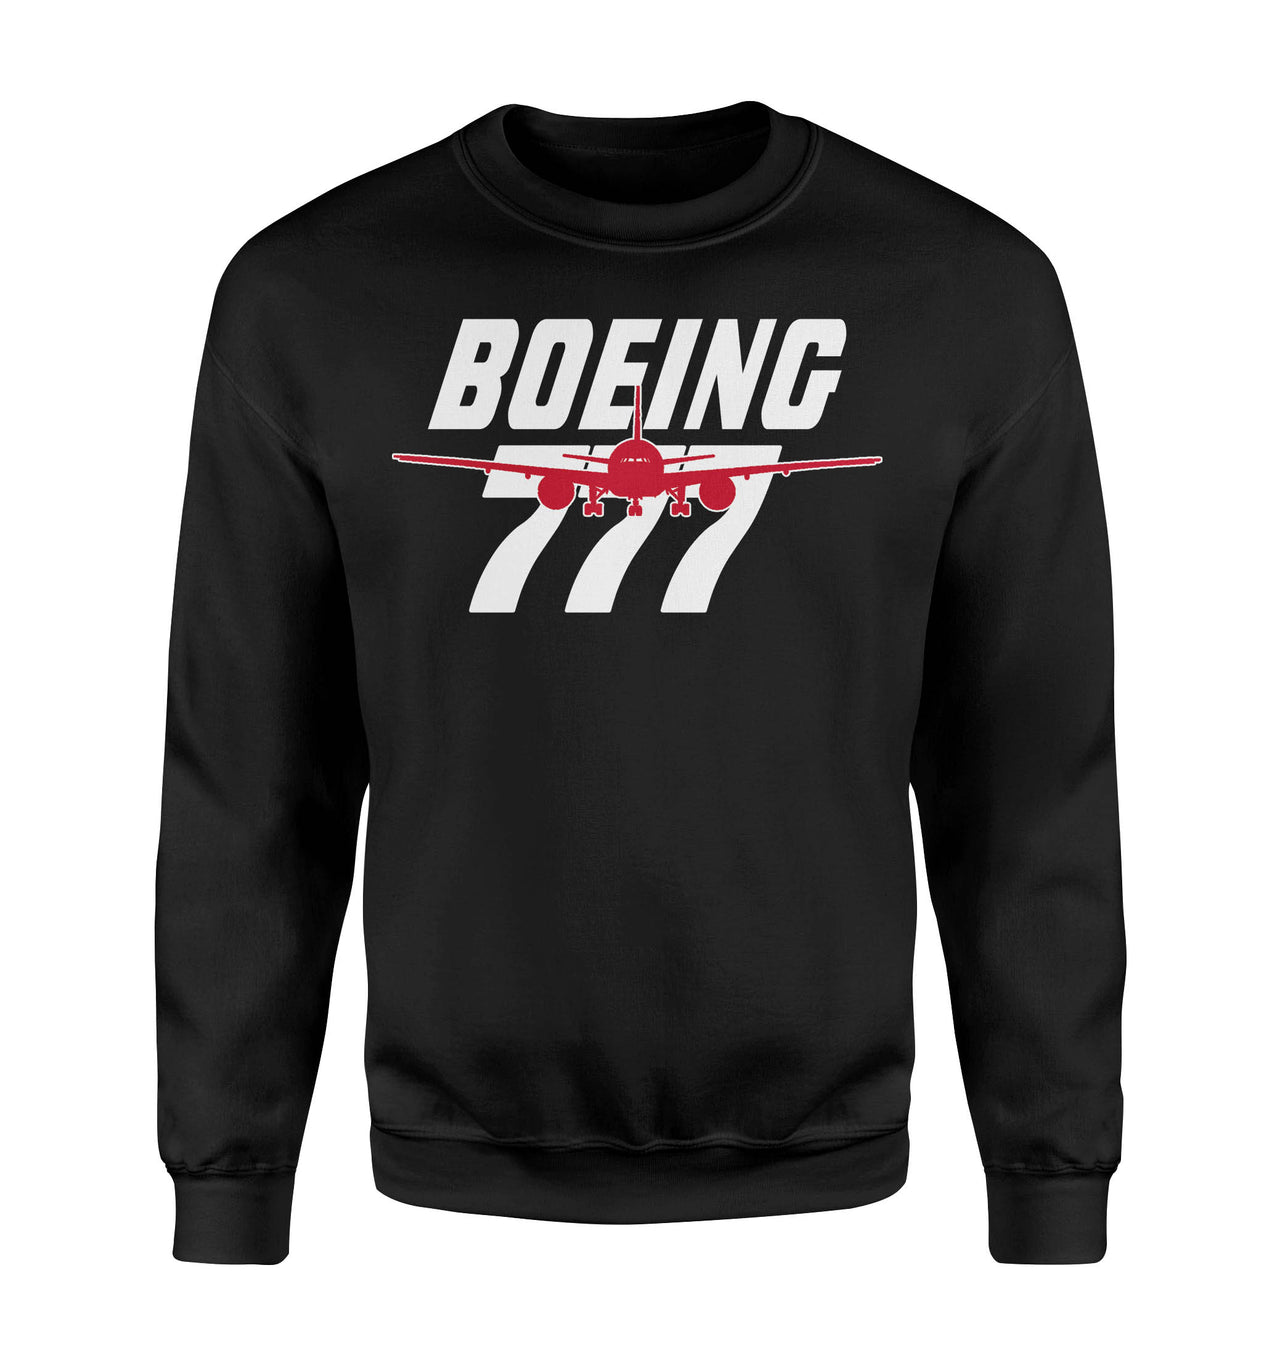 Amazing Boeing 777 Designed Sweatshirts